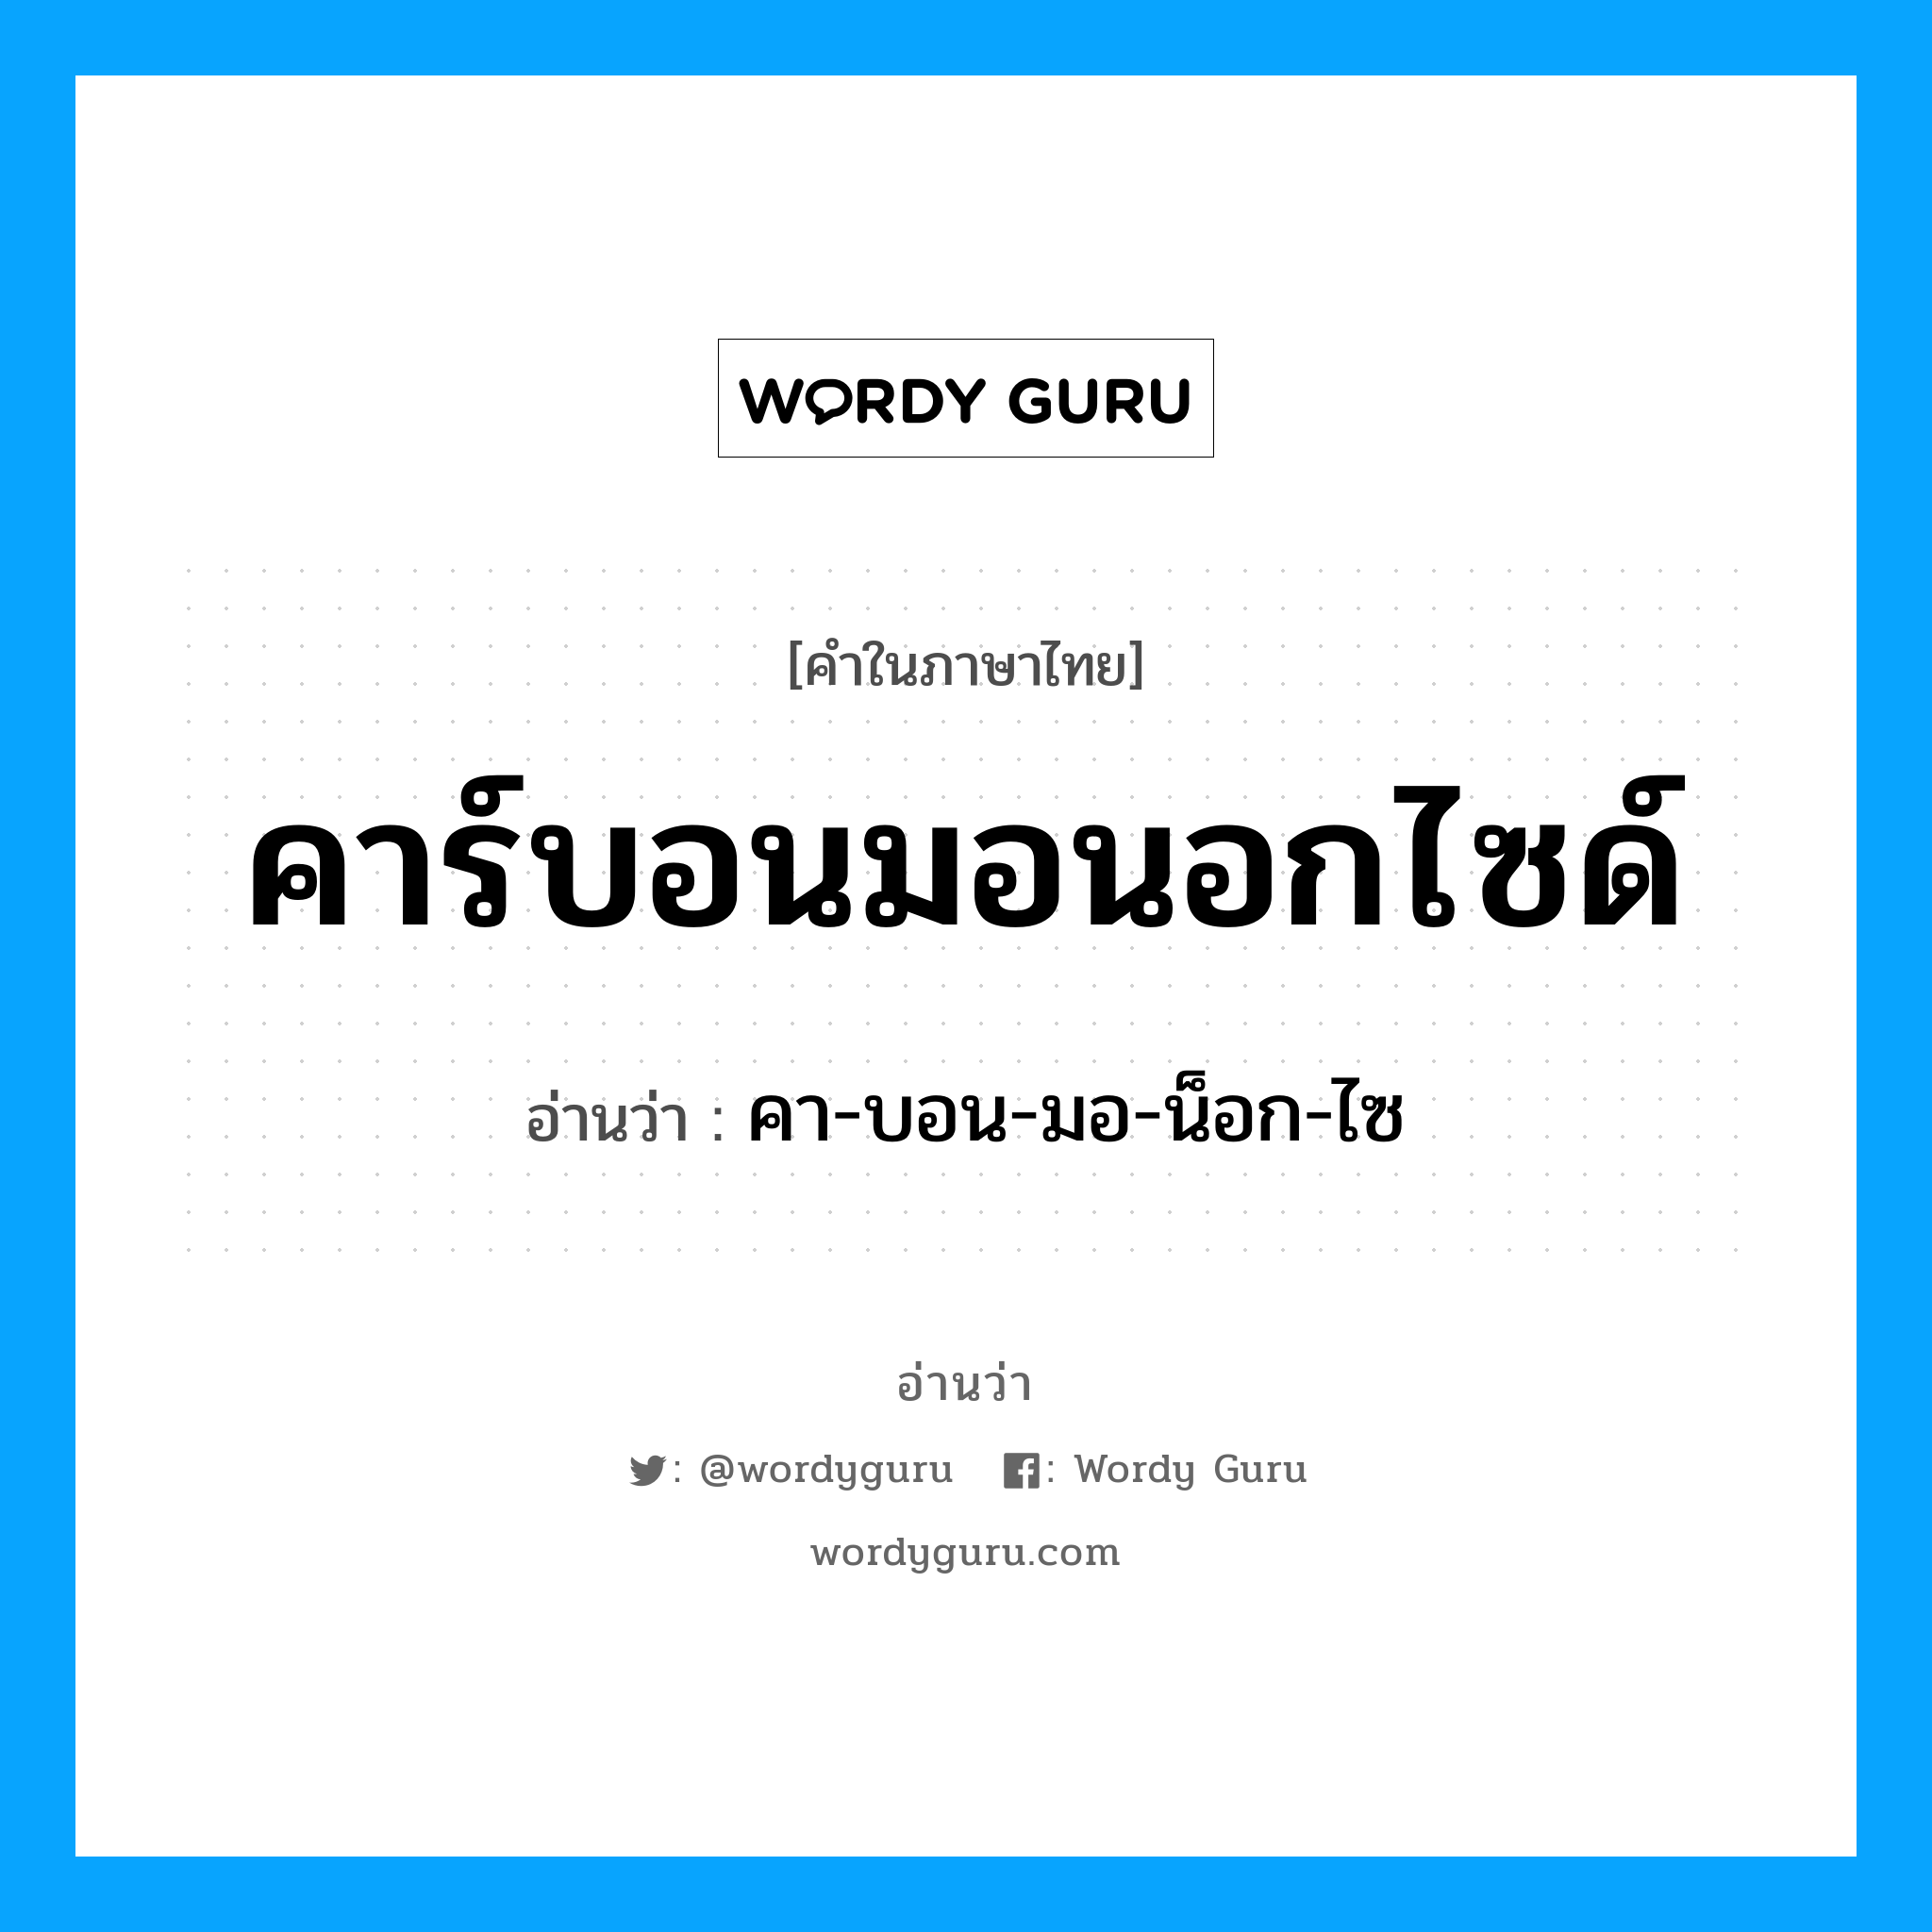 คา-บอน-มอ-น็อก-ไซ เป็นคำอ่านของคำไหน?, คำในภาษาไทย คา-บอน-มอ-น็อก-ไซ อ่านว่า คาร์บอนมอนอกไซด์